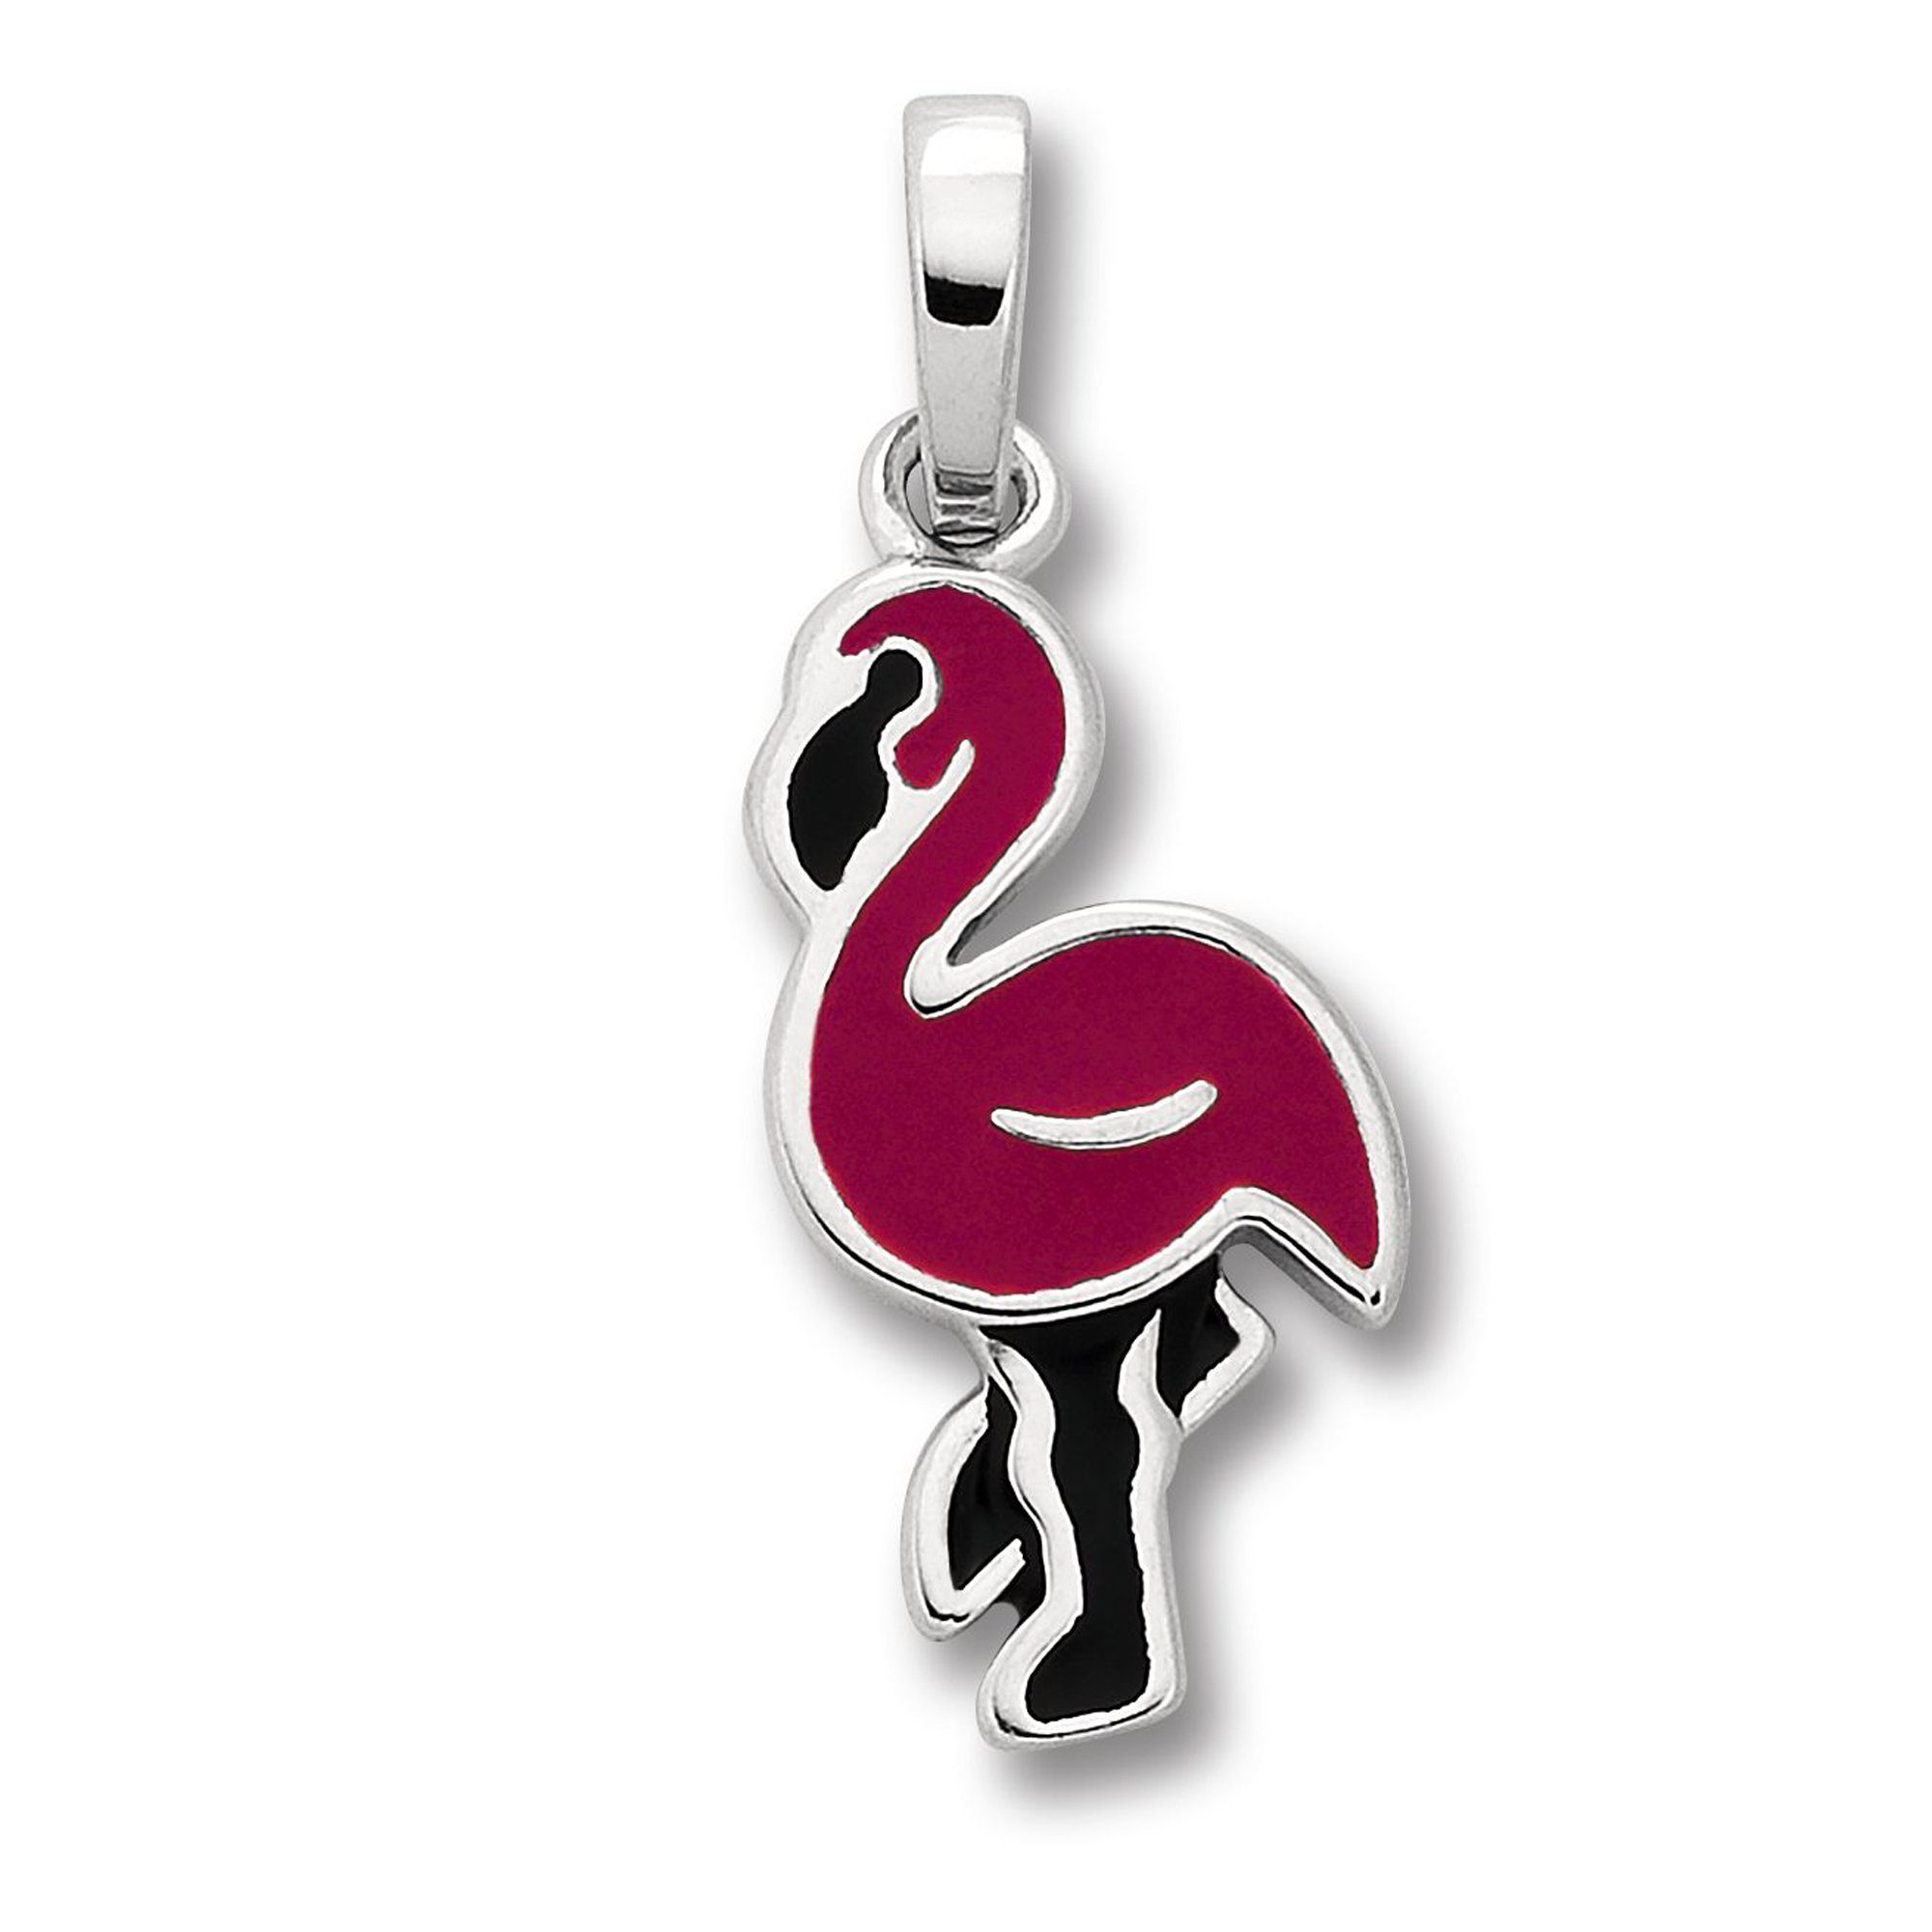 ONE ELEMENT Kettenanhänger Flamingo Anhänger aus 925 Silber, Damen Silber Schmuck Flamingo | Kettenanhänger